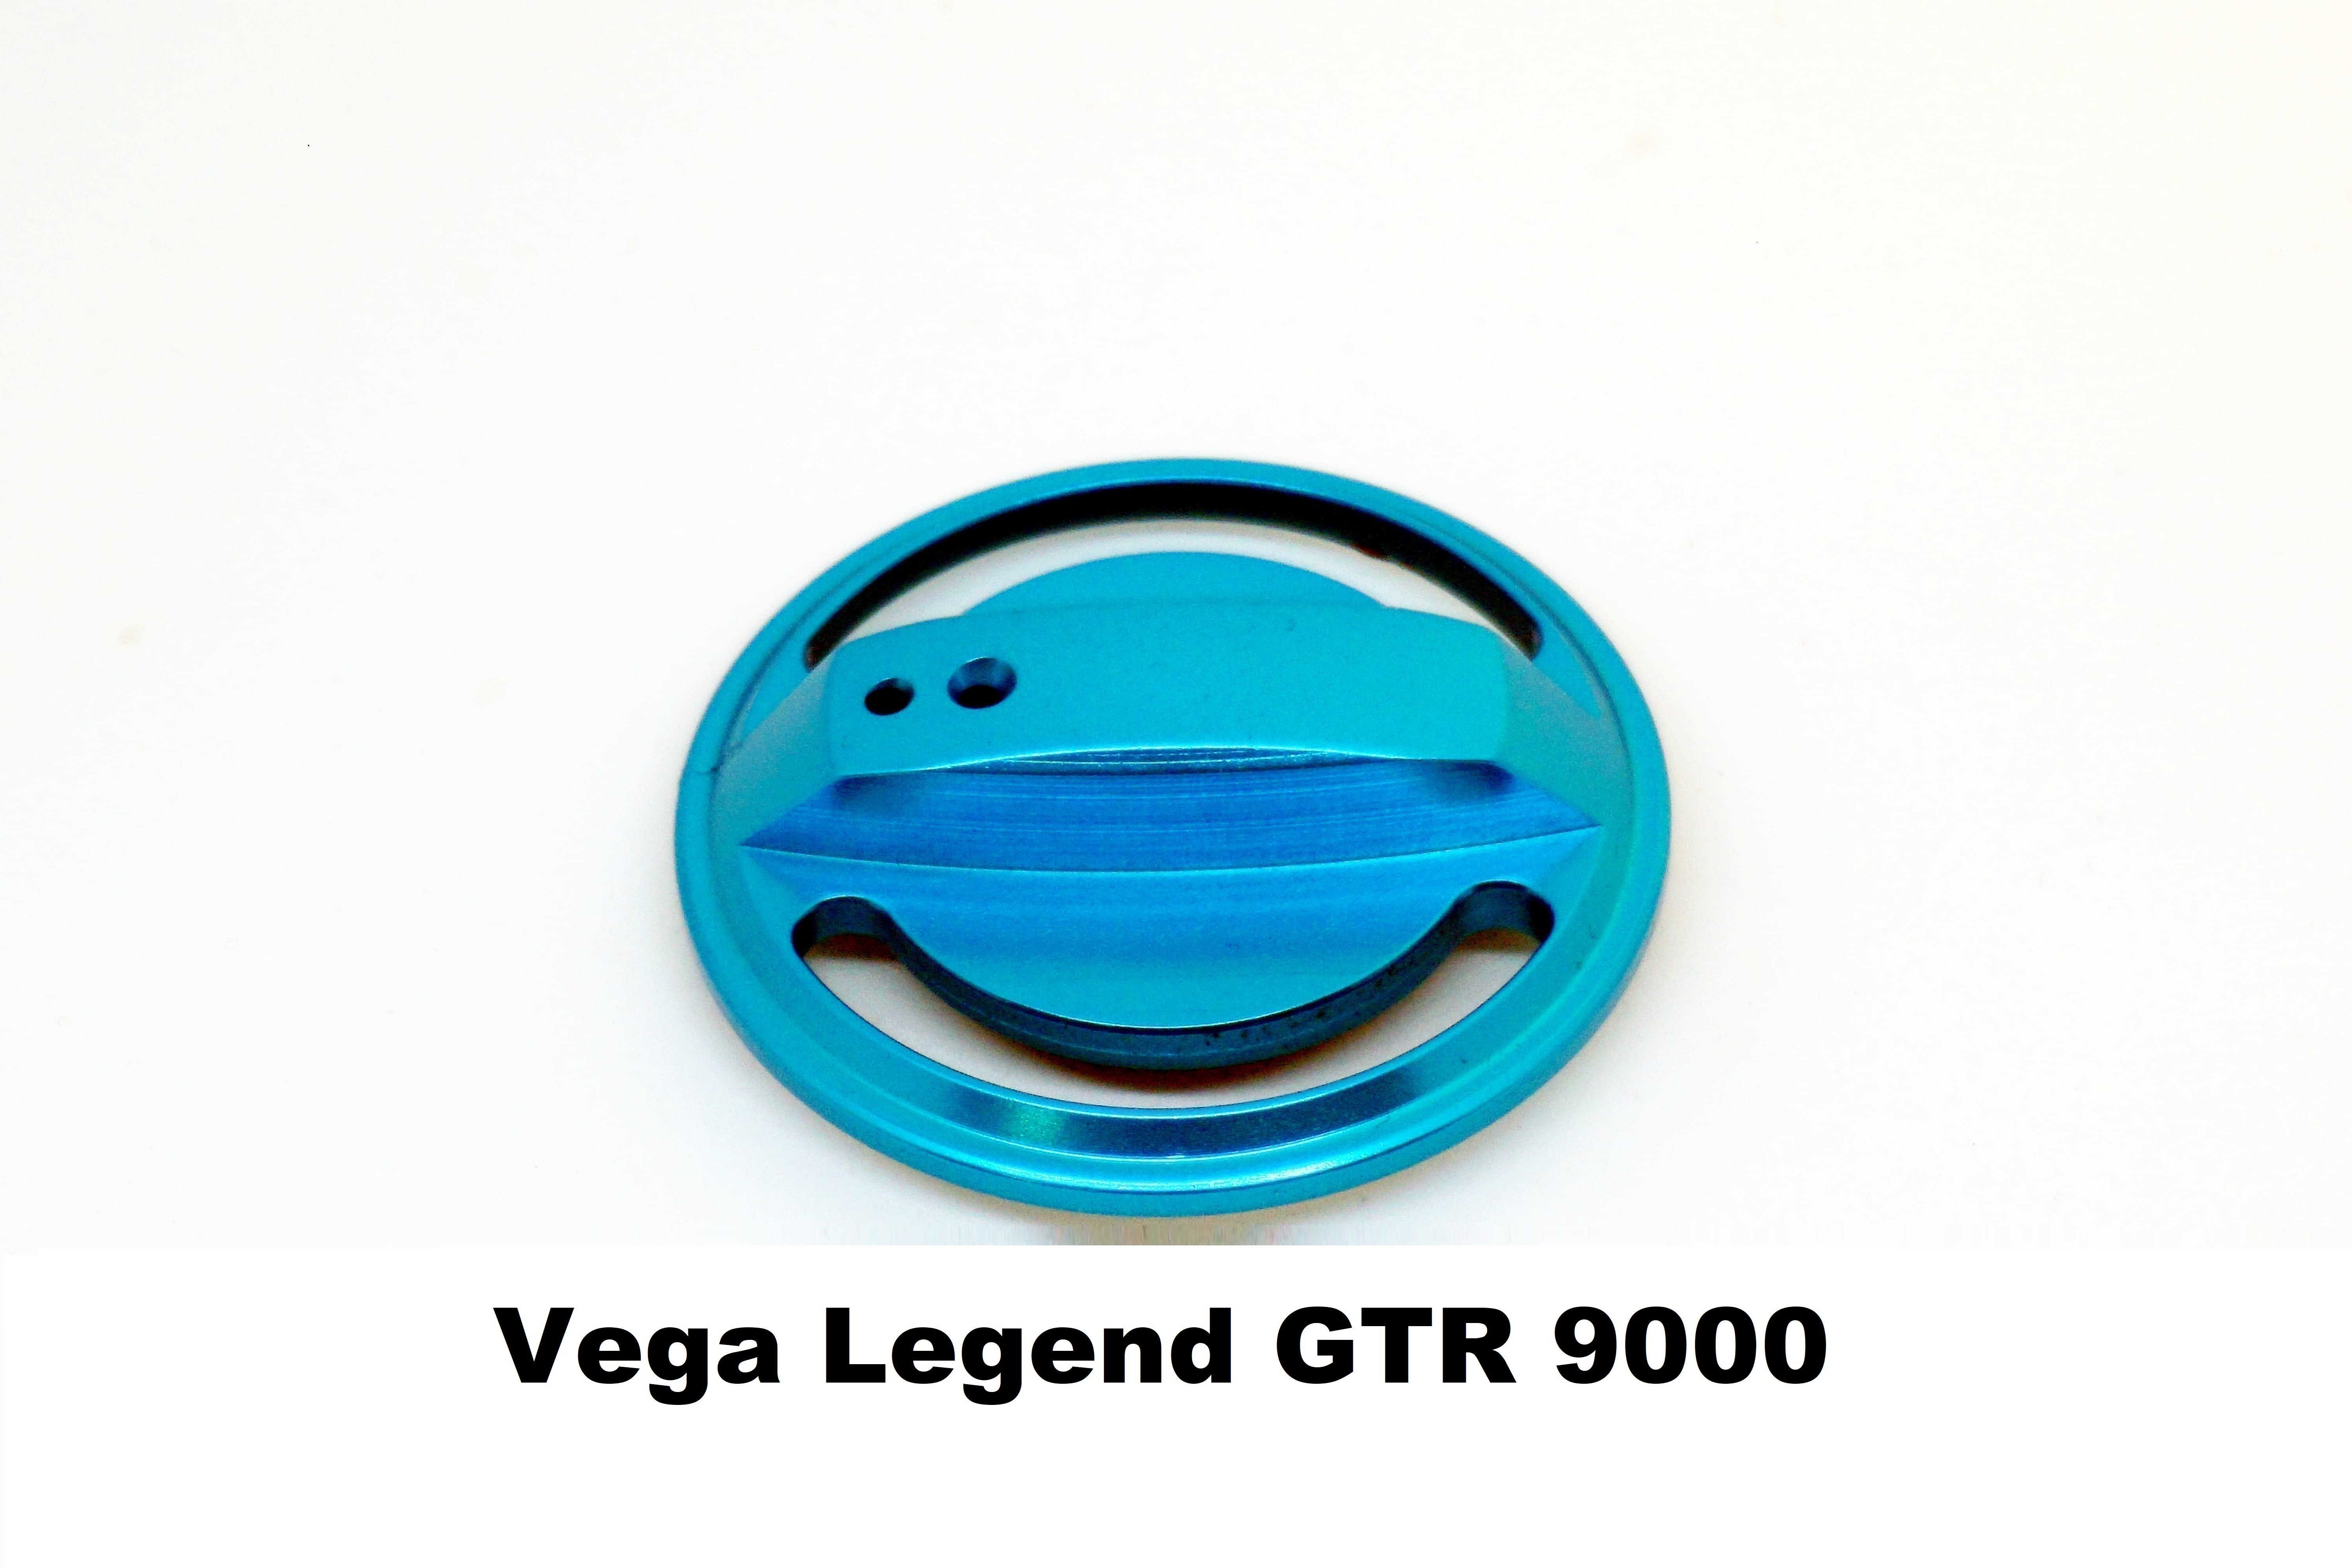 Drag Knob for Vega Legend GTR 9000